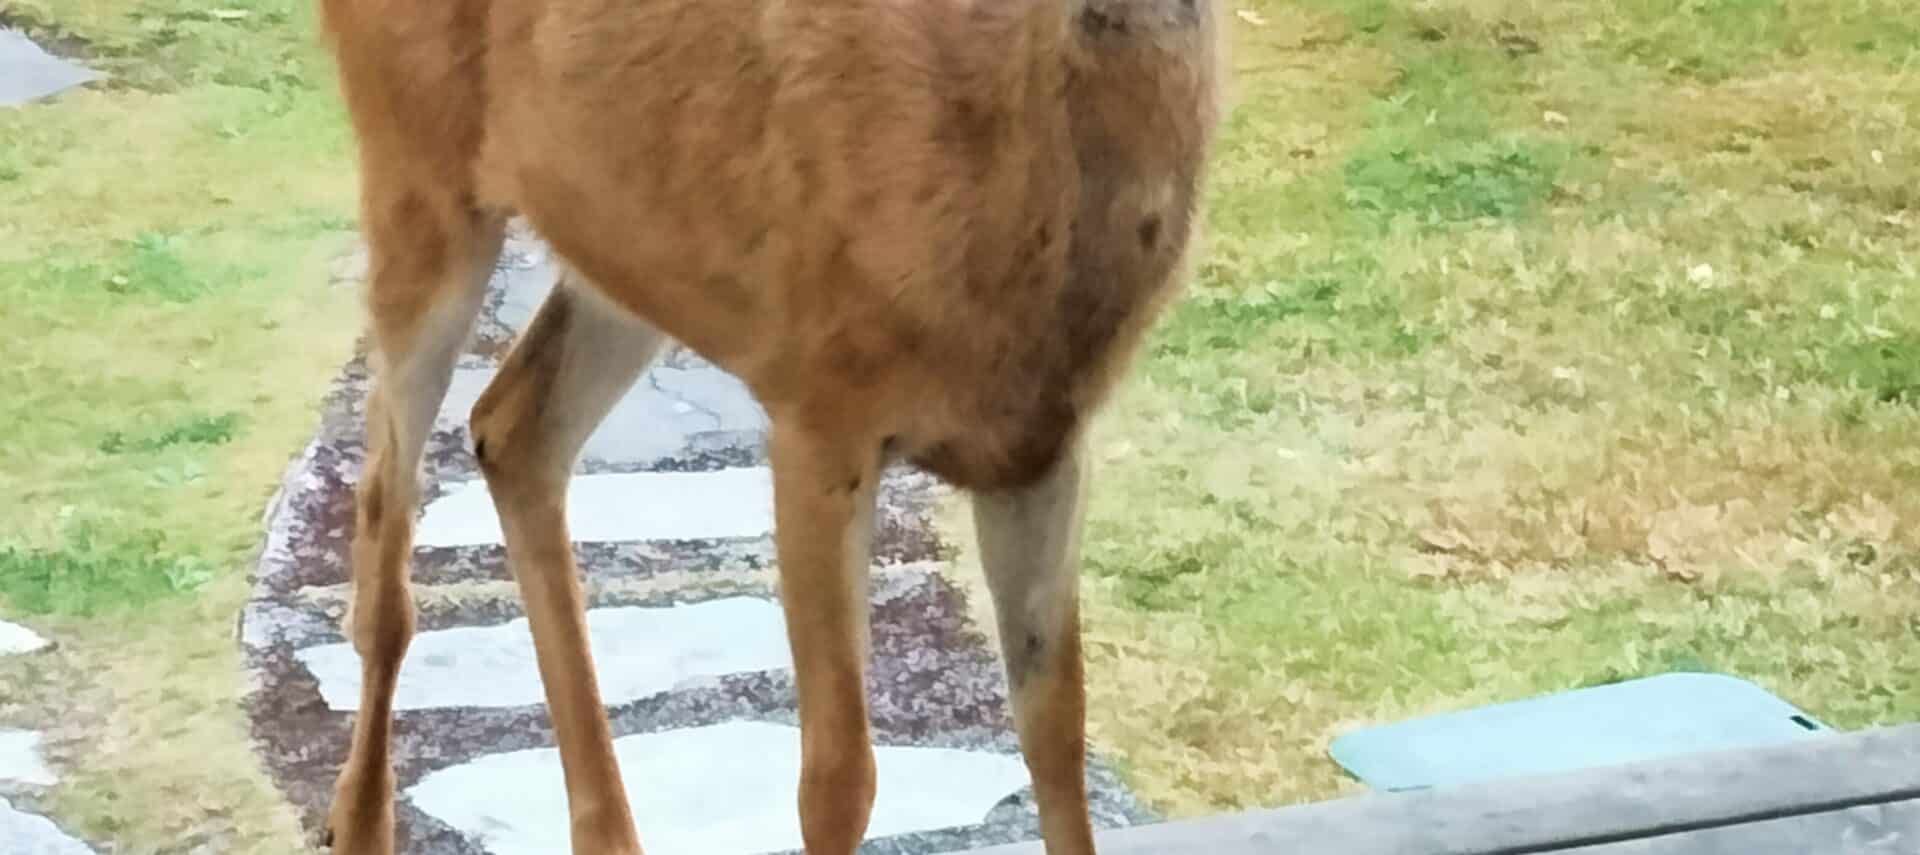 small male deer standing by side door